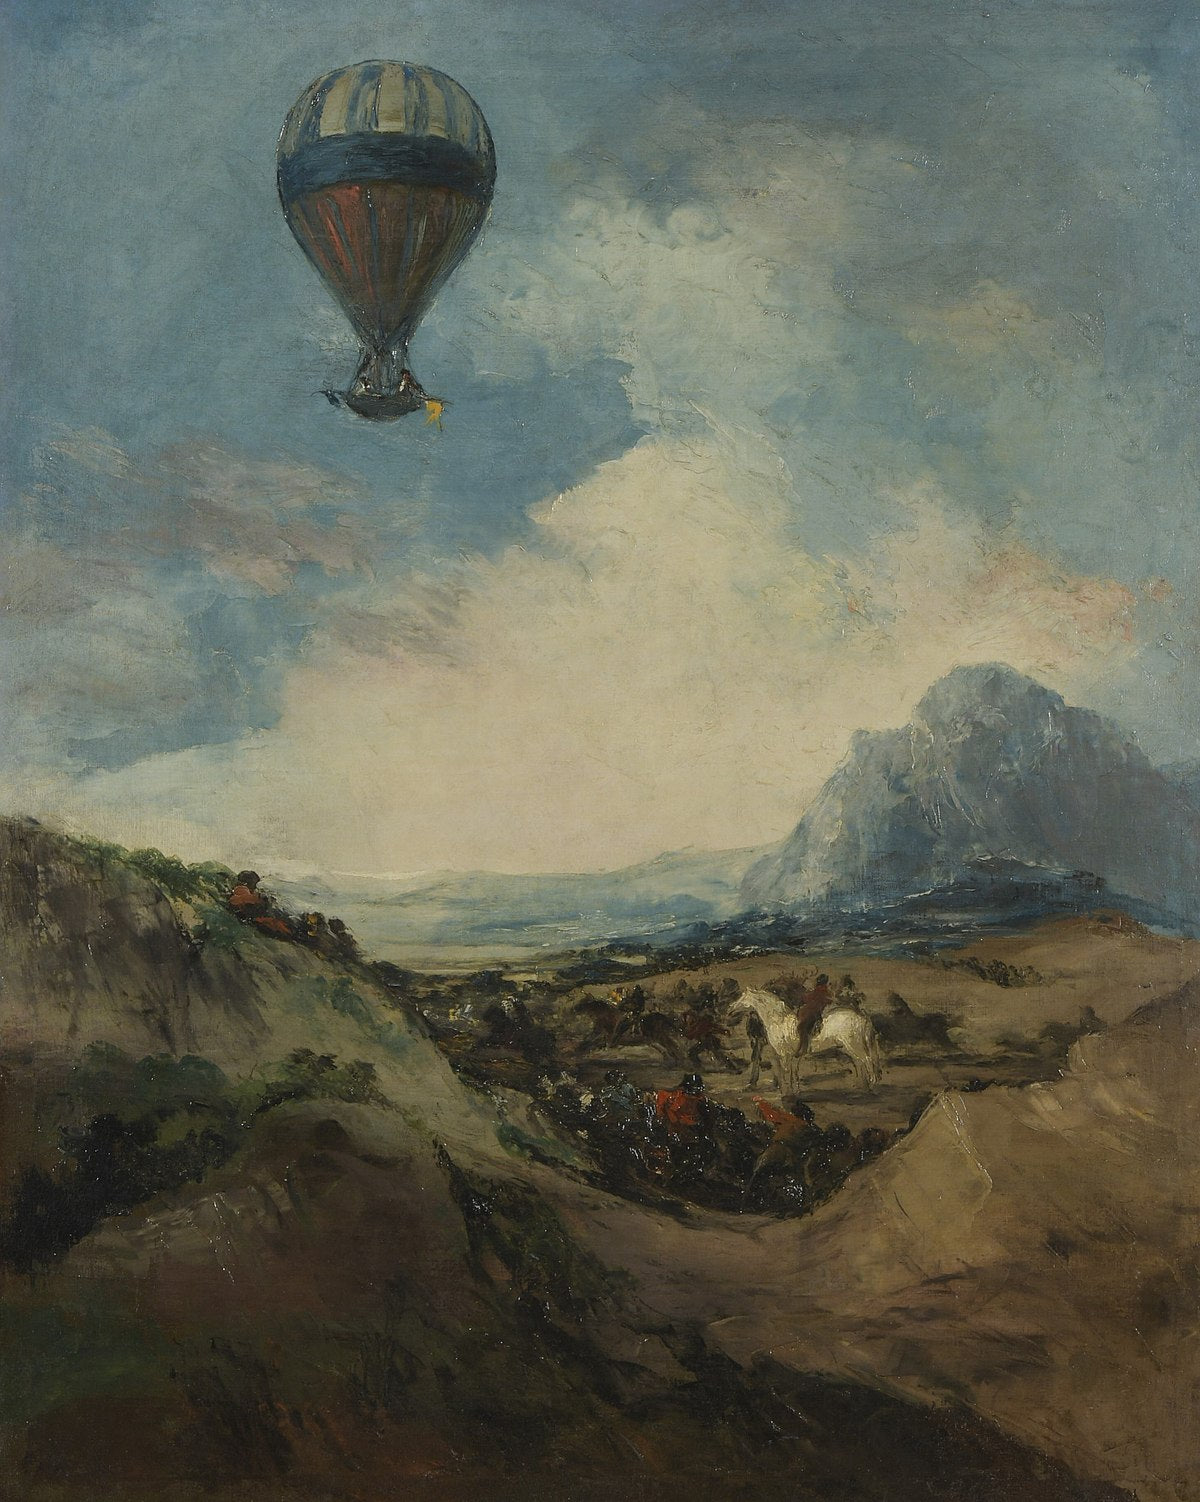 Le ballon - Francisco de Goya